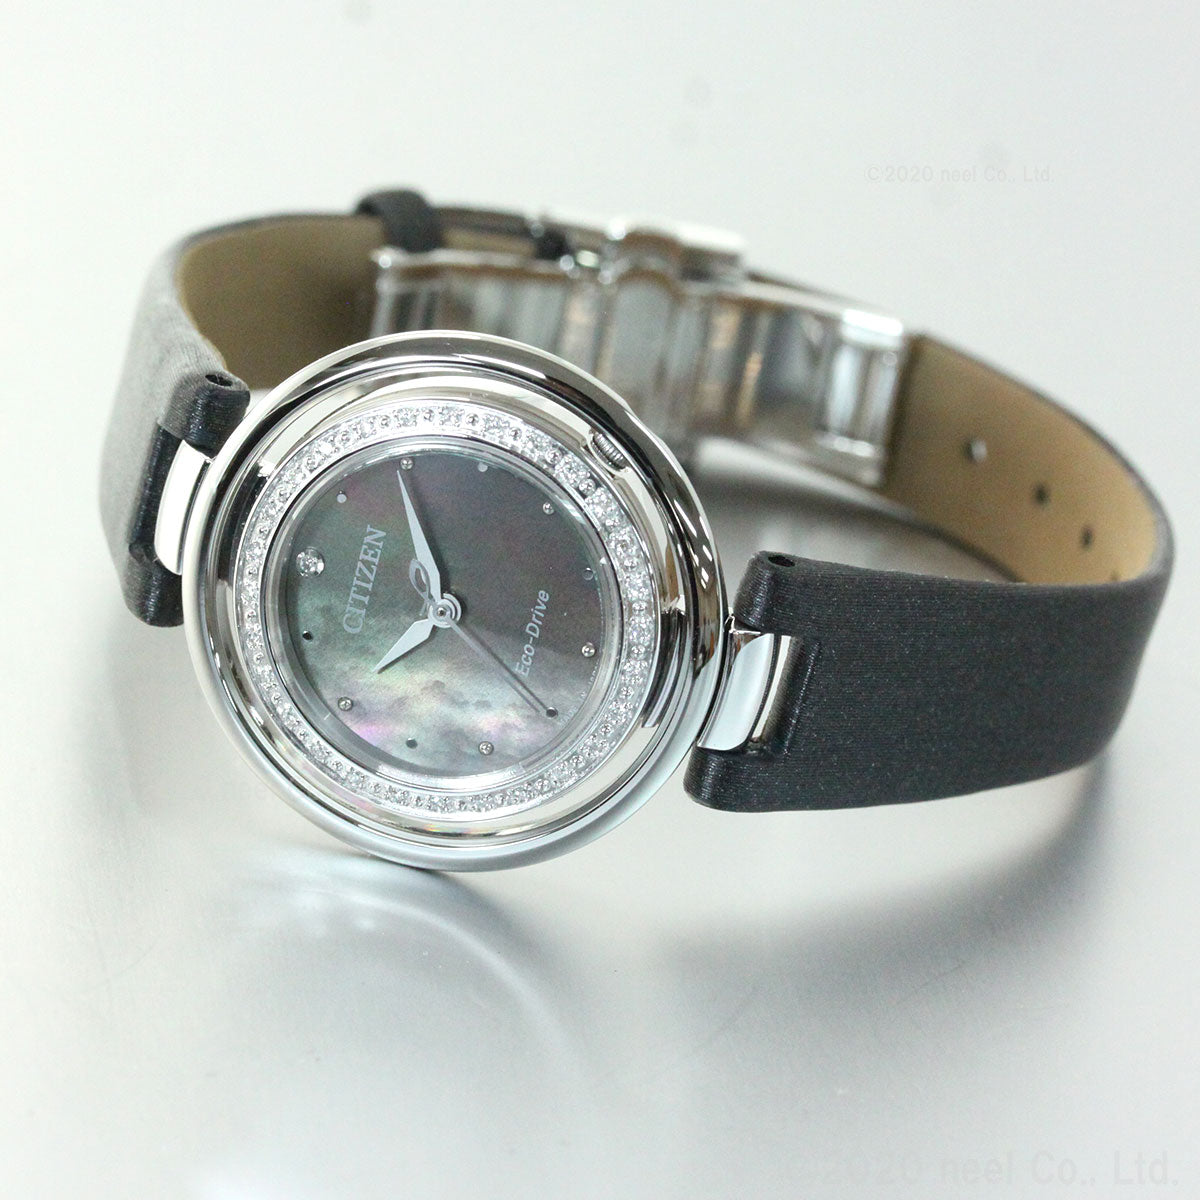 シチズン CITIZEN 腕時計 レディース EM0900-08W エル エコ・ドライブ ダイヤモンドモデル CITIZEN L エコ・ドライブ（E031） ブラックシェルxブラック アナログ表示